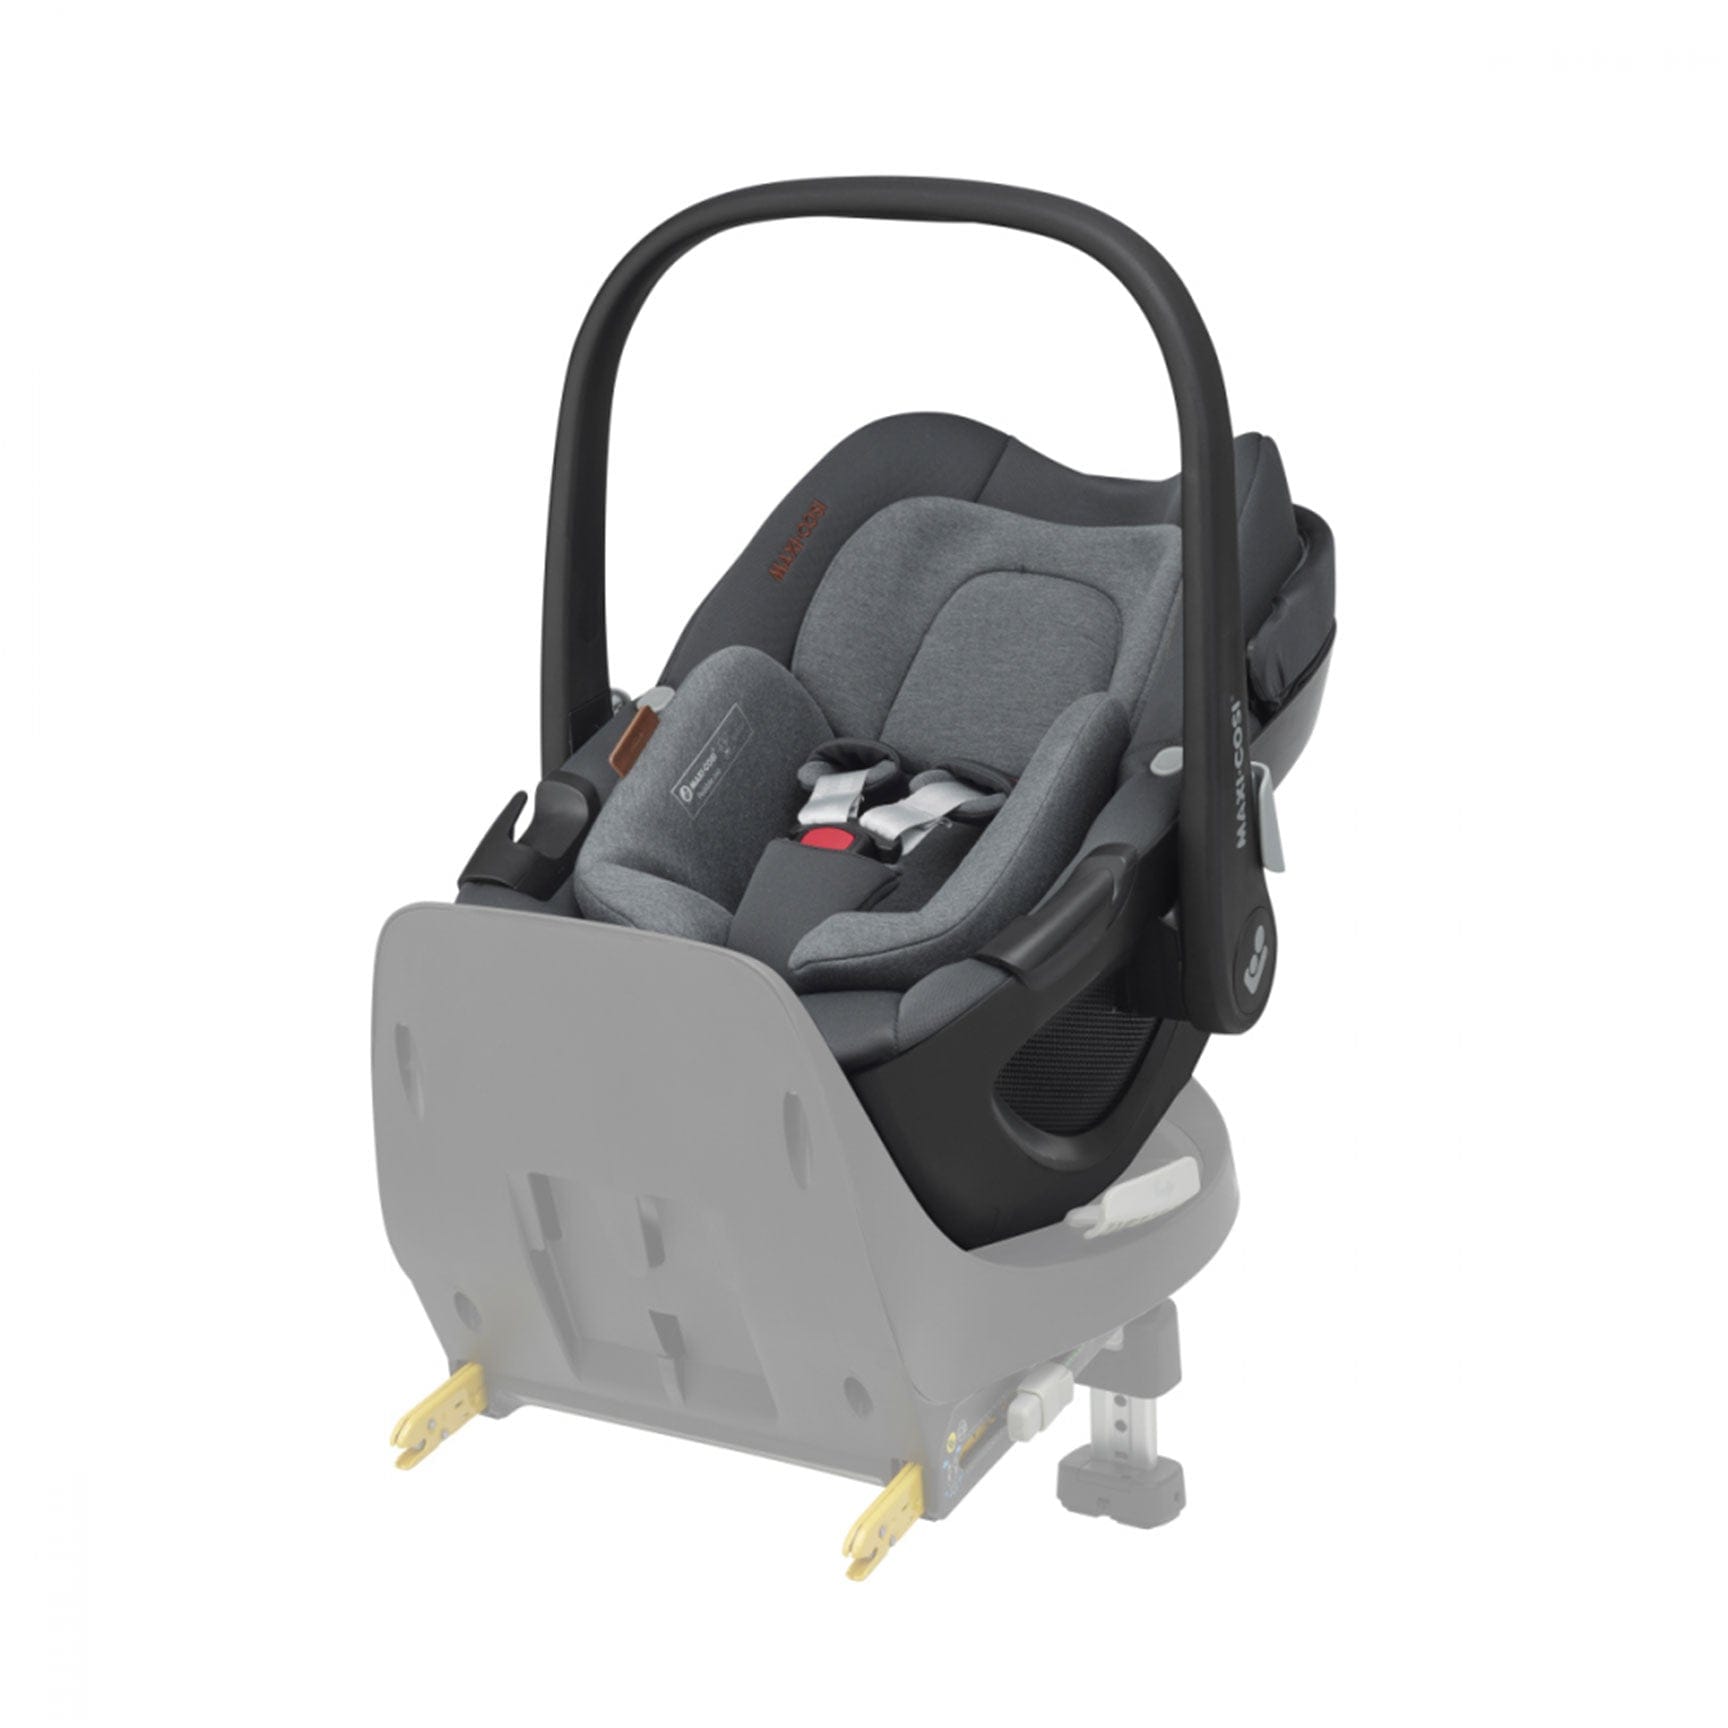 Maxi-Cosi Baby Car Seats Maxi-Cosi Pebble 360 Luxe - Twillic Grey 8044370300